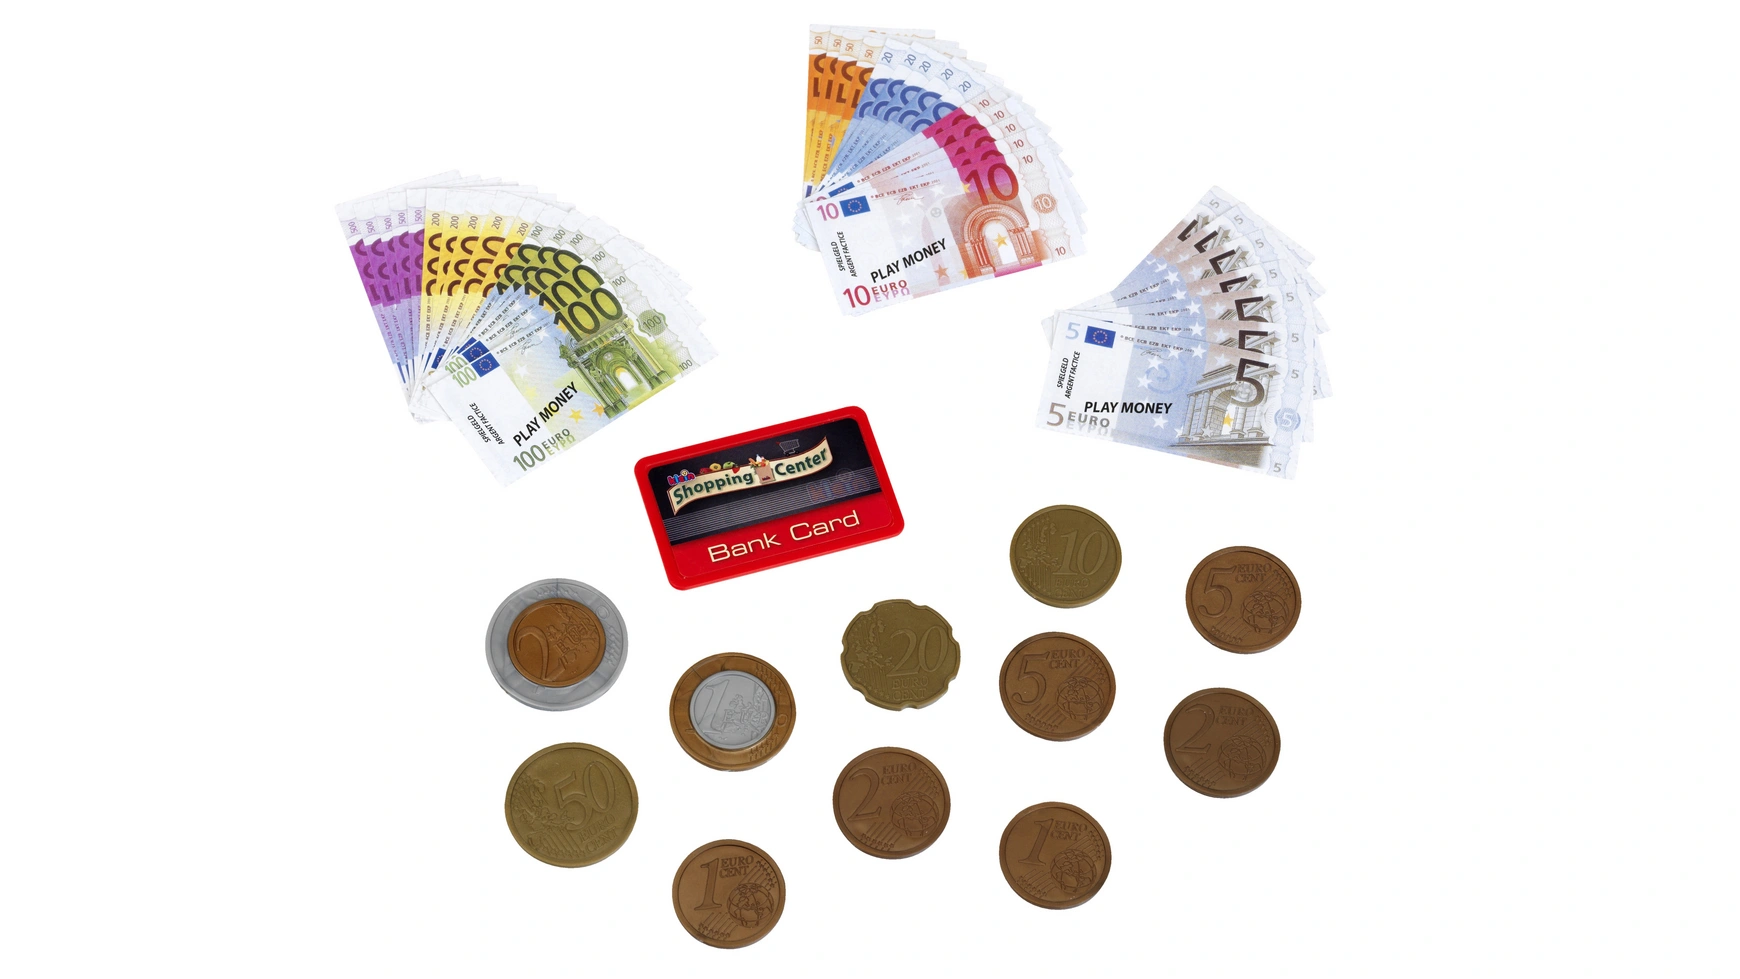 Тео Klein деньги евро с кредитной картой I 37 банкнот и 11 монет от монеты в 1 цент до банкноты в 500 деньги игрушечные klein евро с кредитной картой 9605